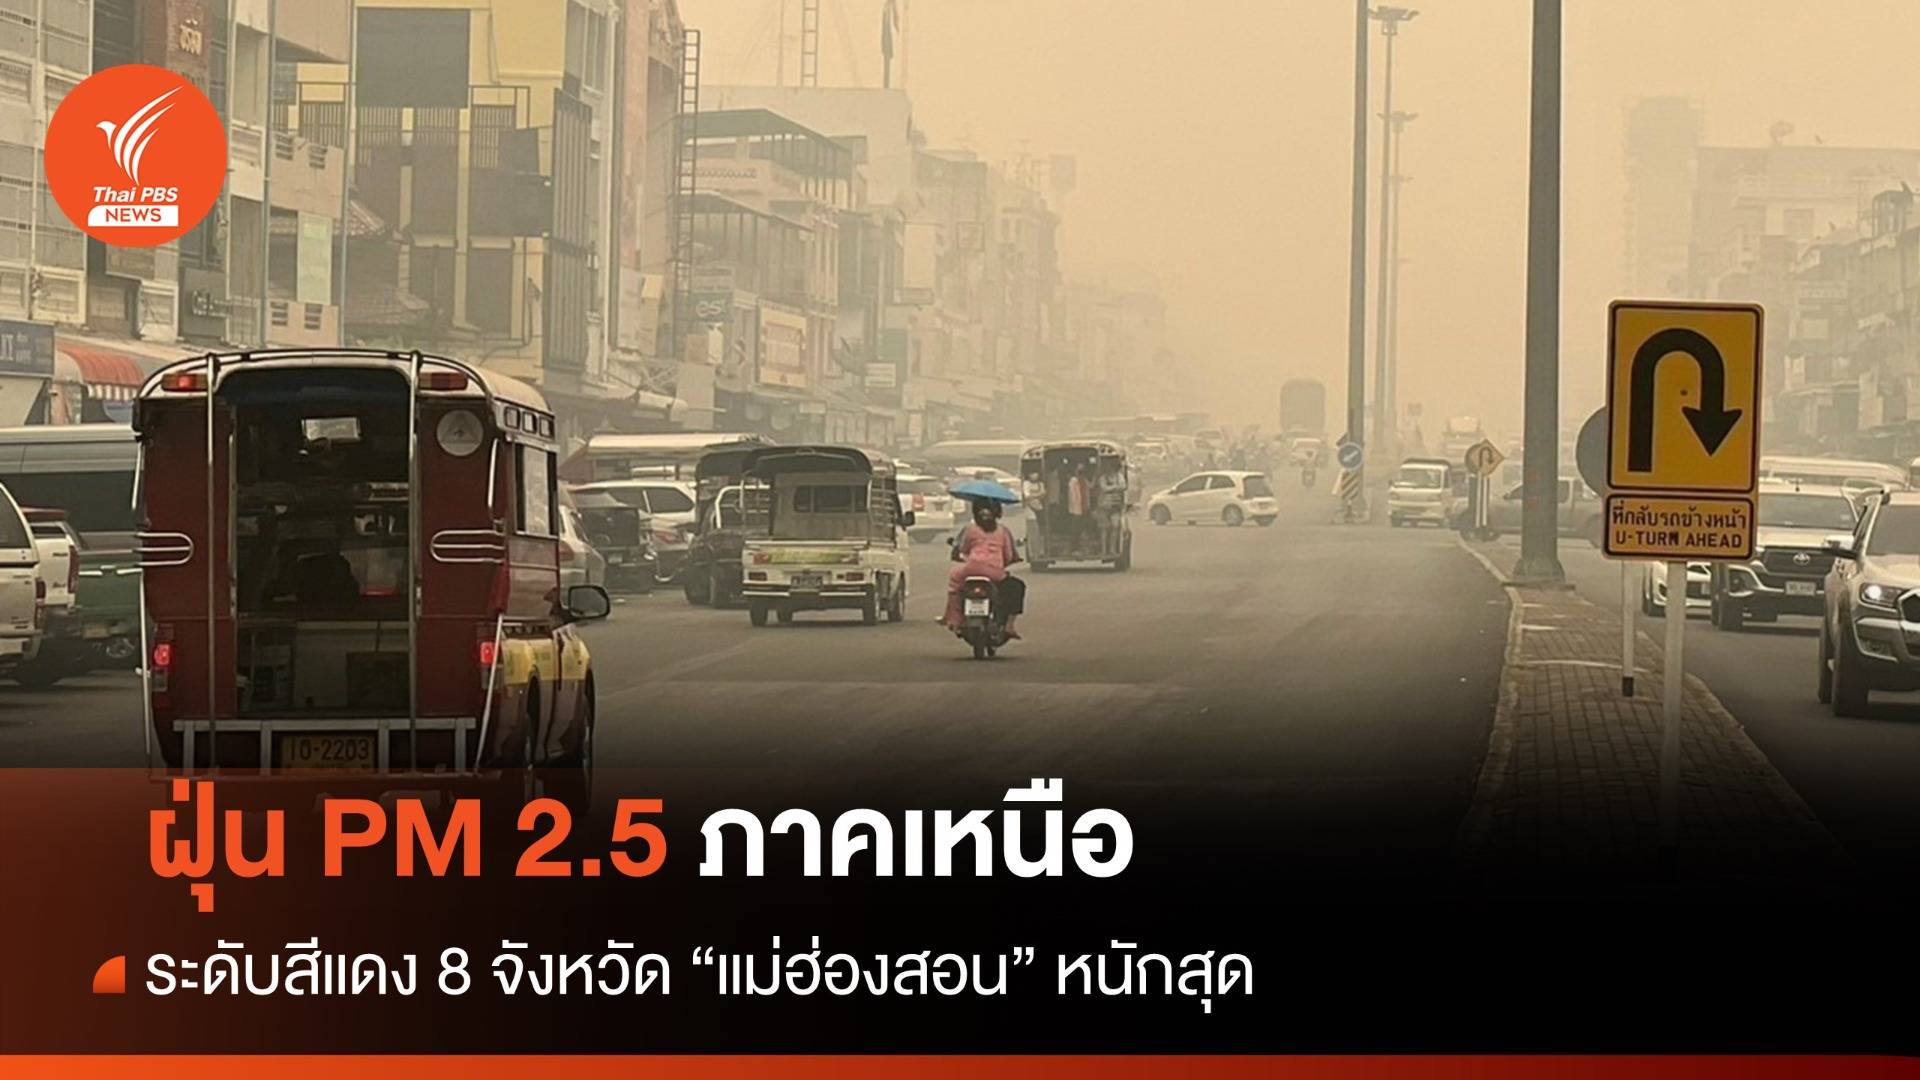 ฝุ่น PM 2.5 ภาคเหนือระดับสีแดง 8 จว. แม่ฮ่องสอนหนักสุด - เชียงใหม่ อันดับ 3 โลก